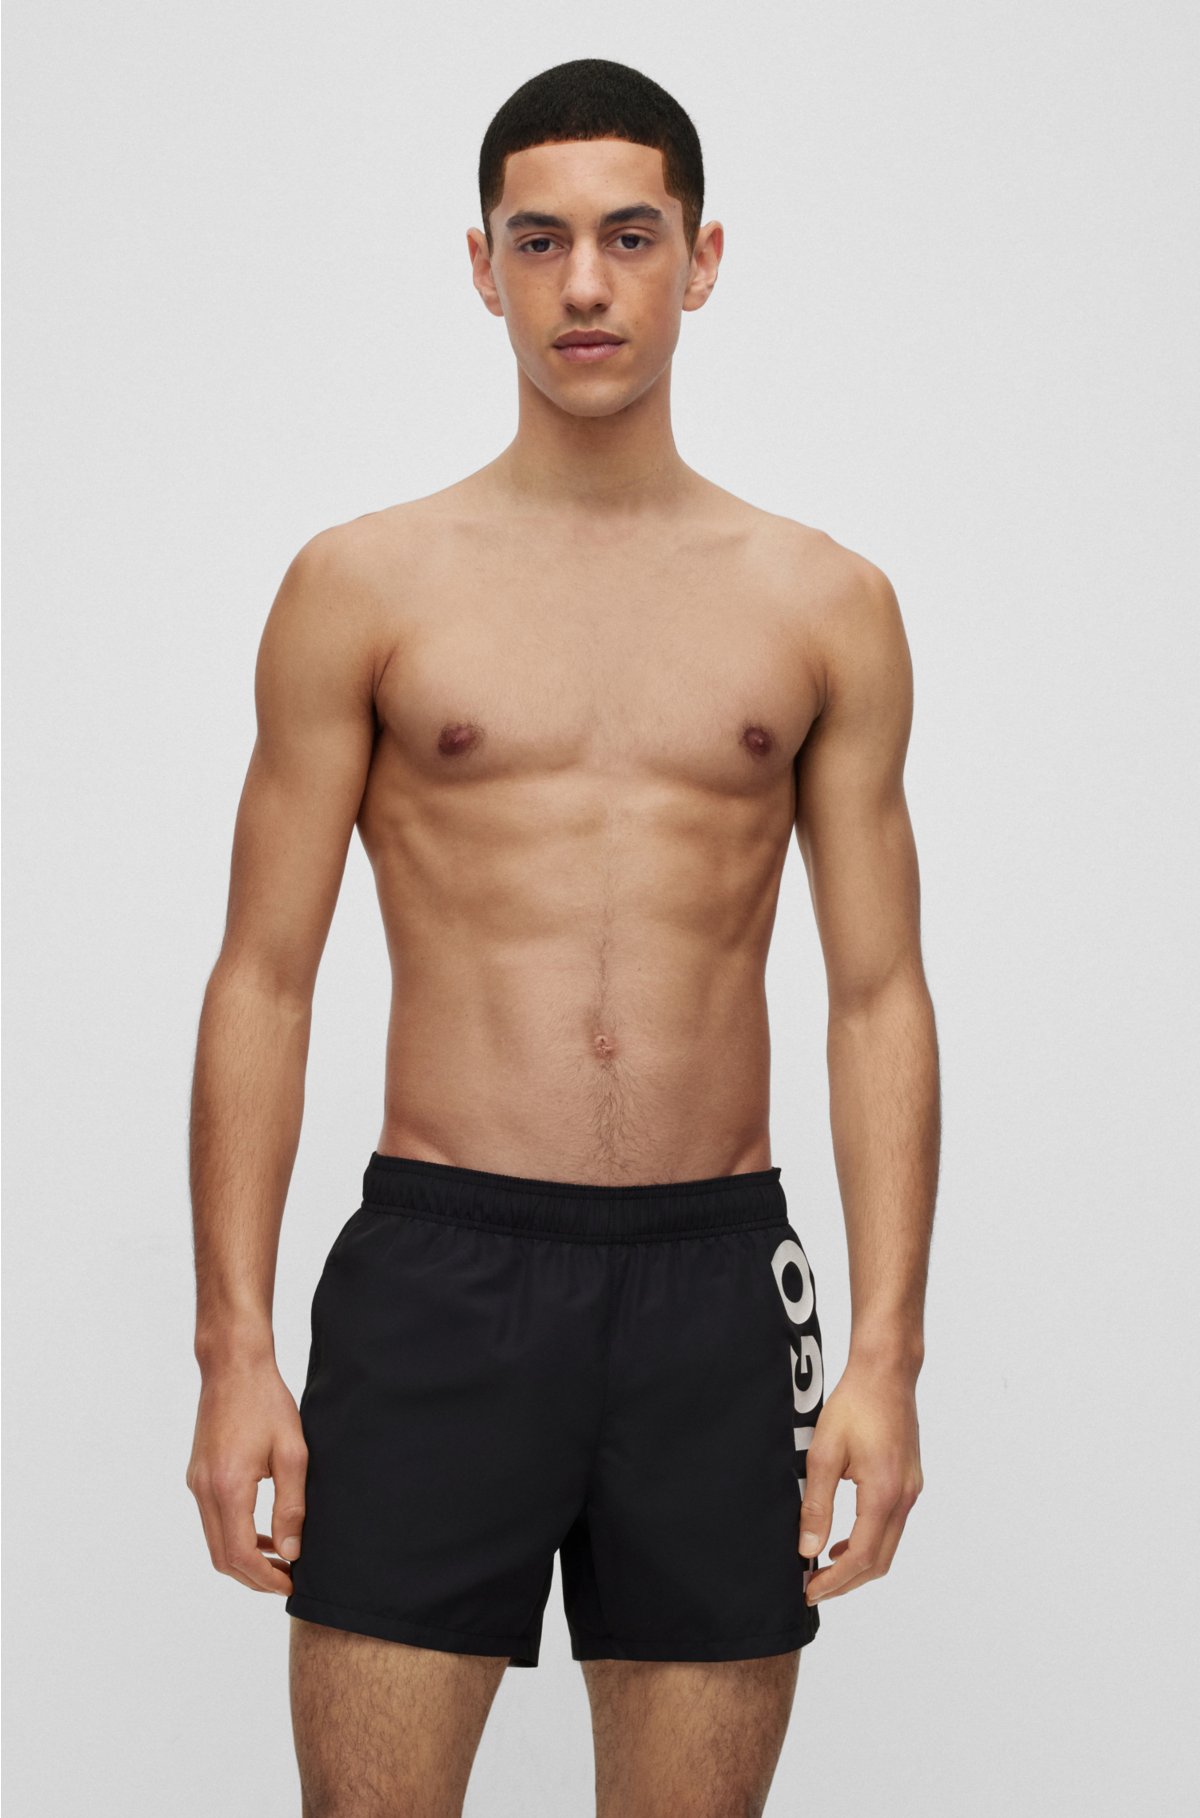 HUGO - Quick-dry patterned swim shorts